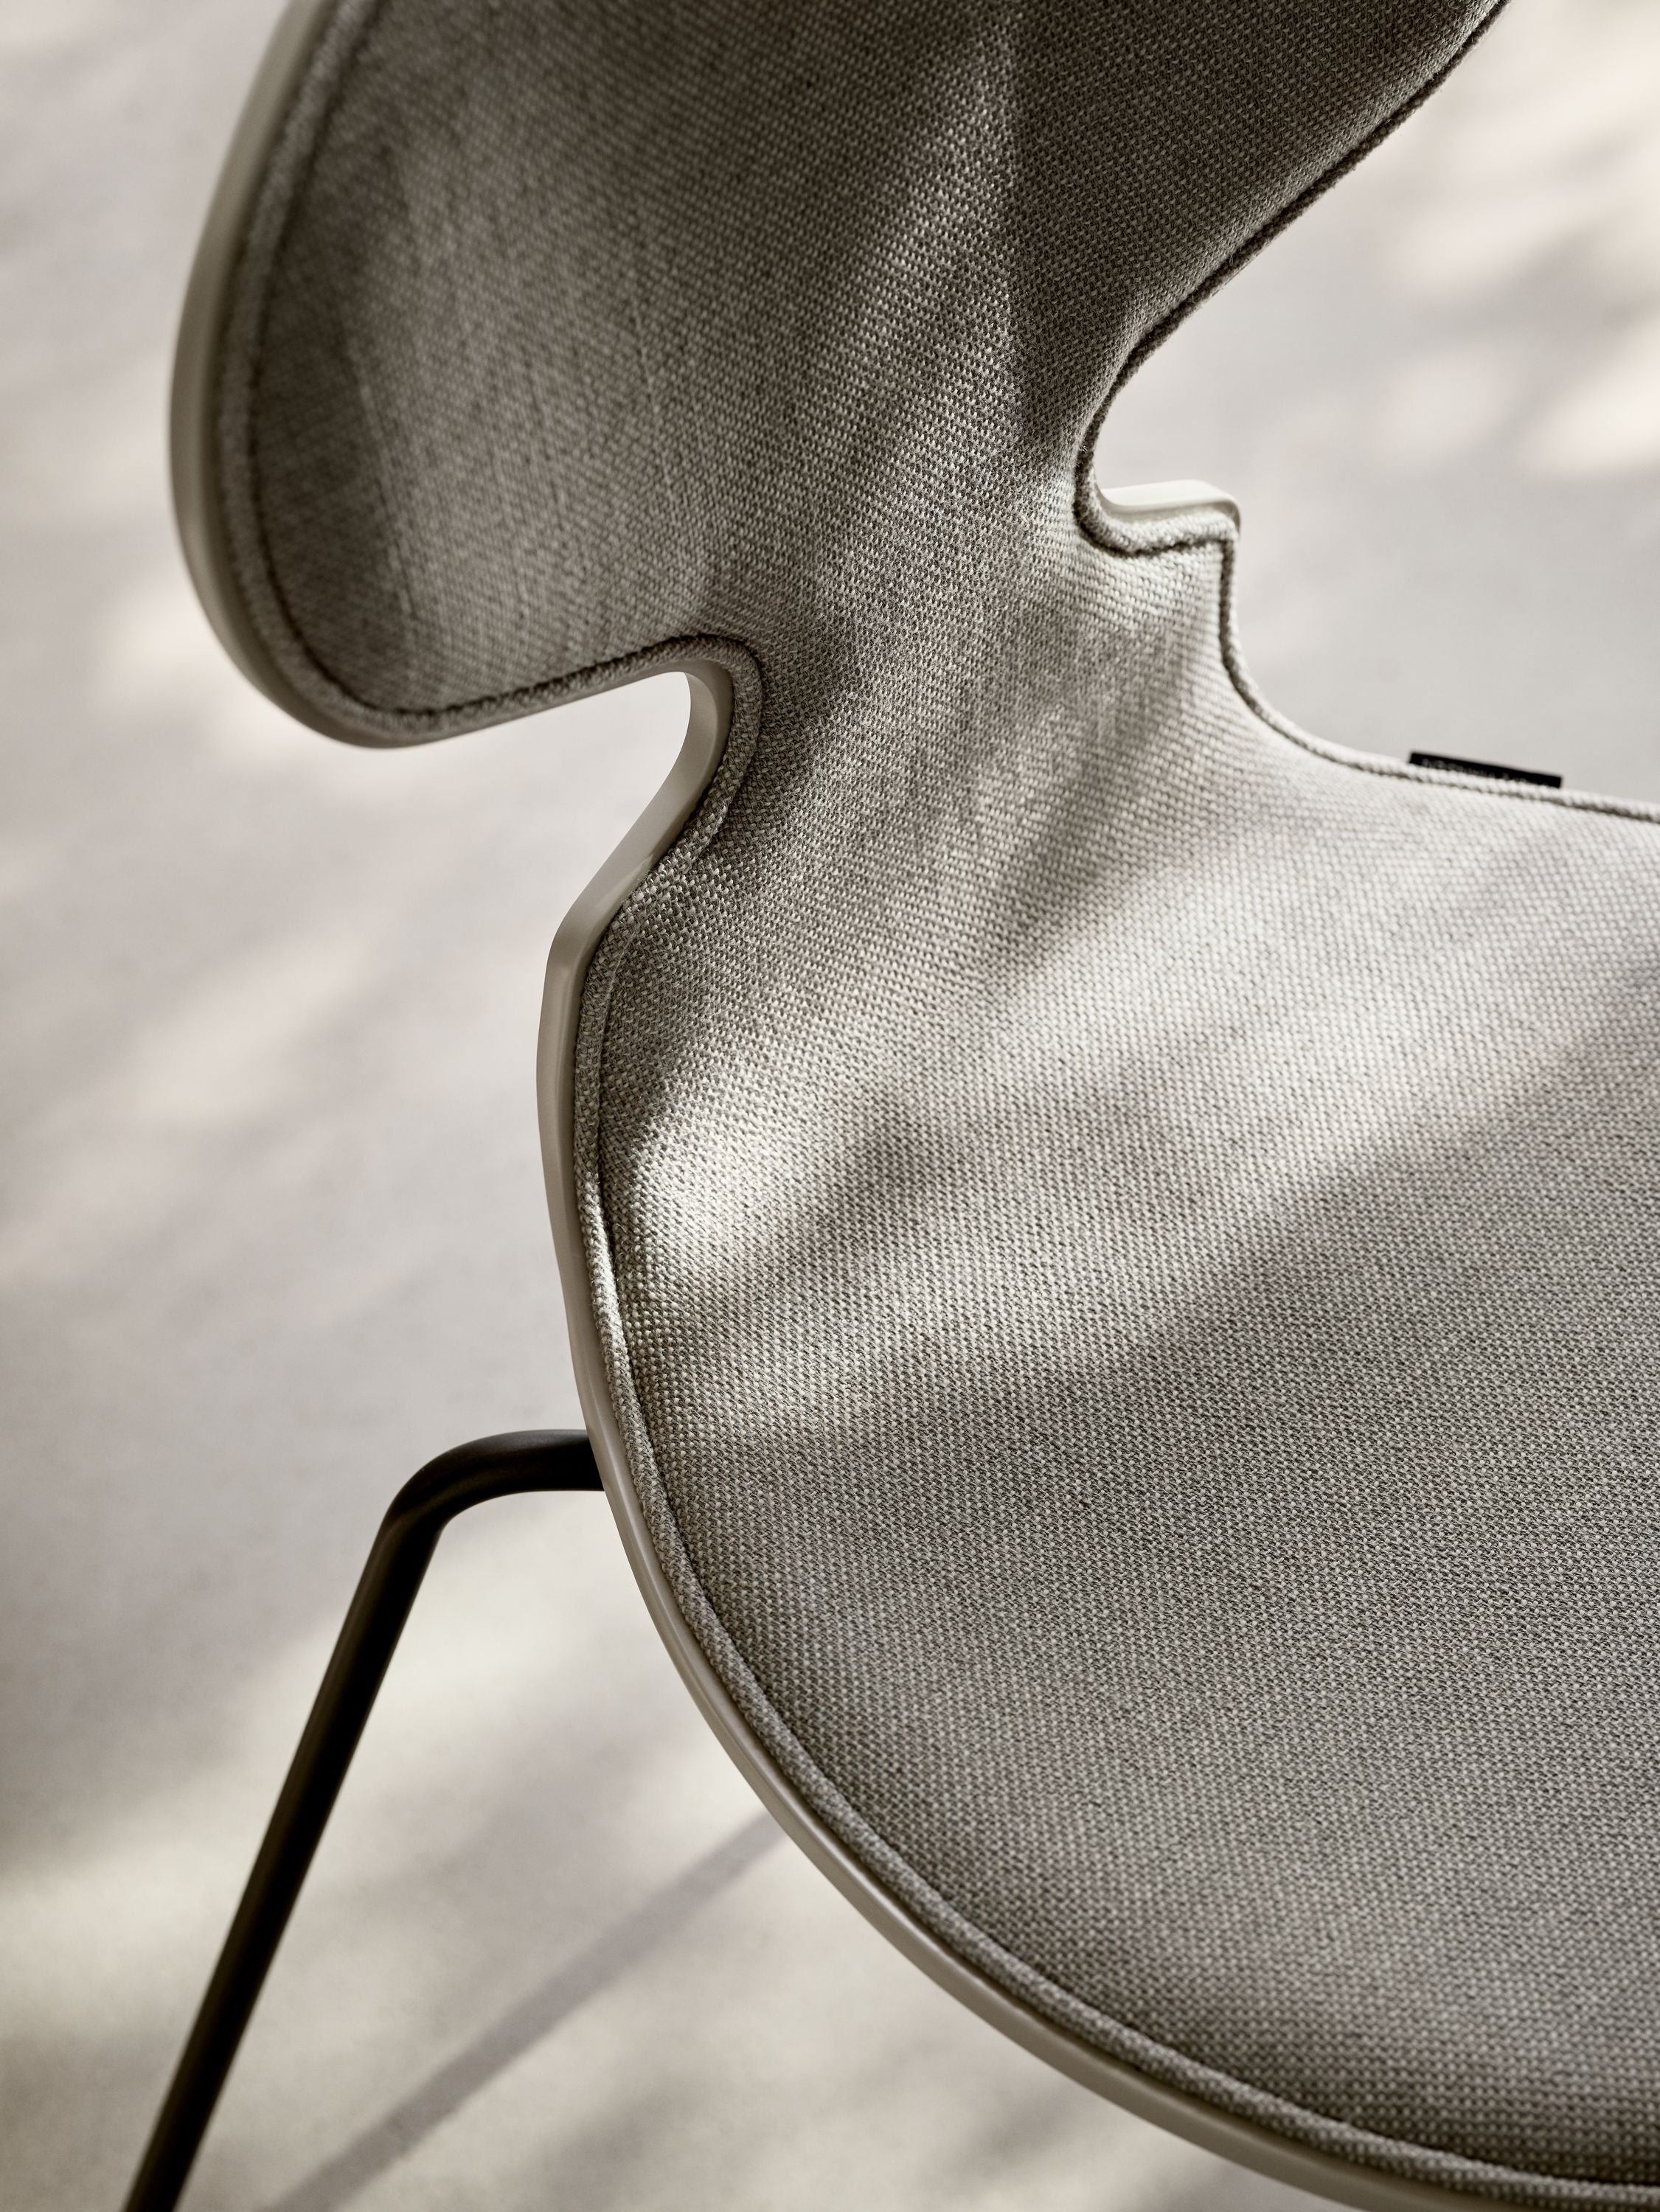 Fritz Hansen 3101 chaise fourmi avant rembourré, coquille: placage coloré argile profonde, rembourrage: sunniva sable textile / gris clair, base: acier / chrome